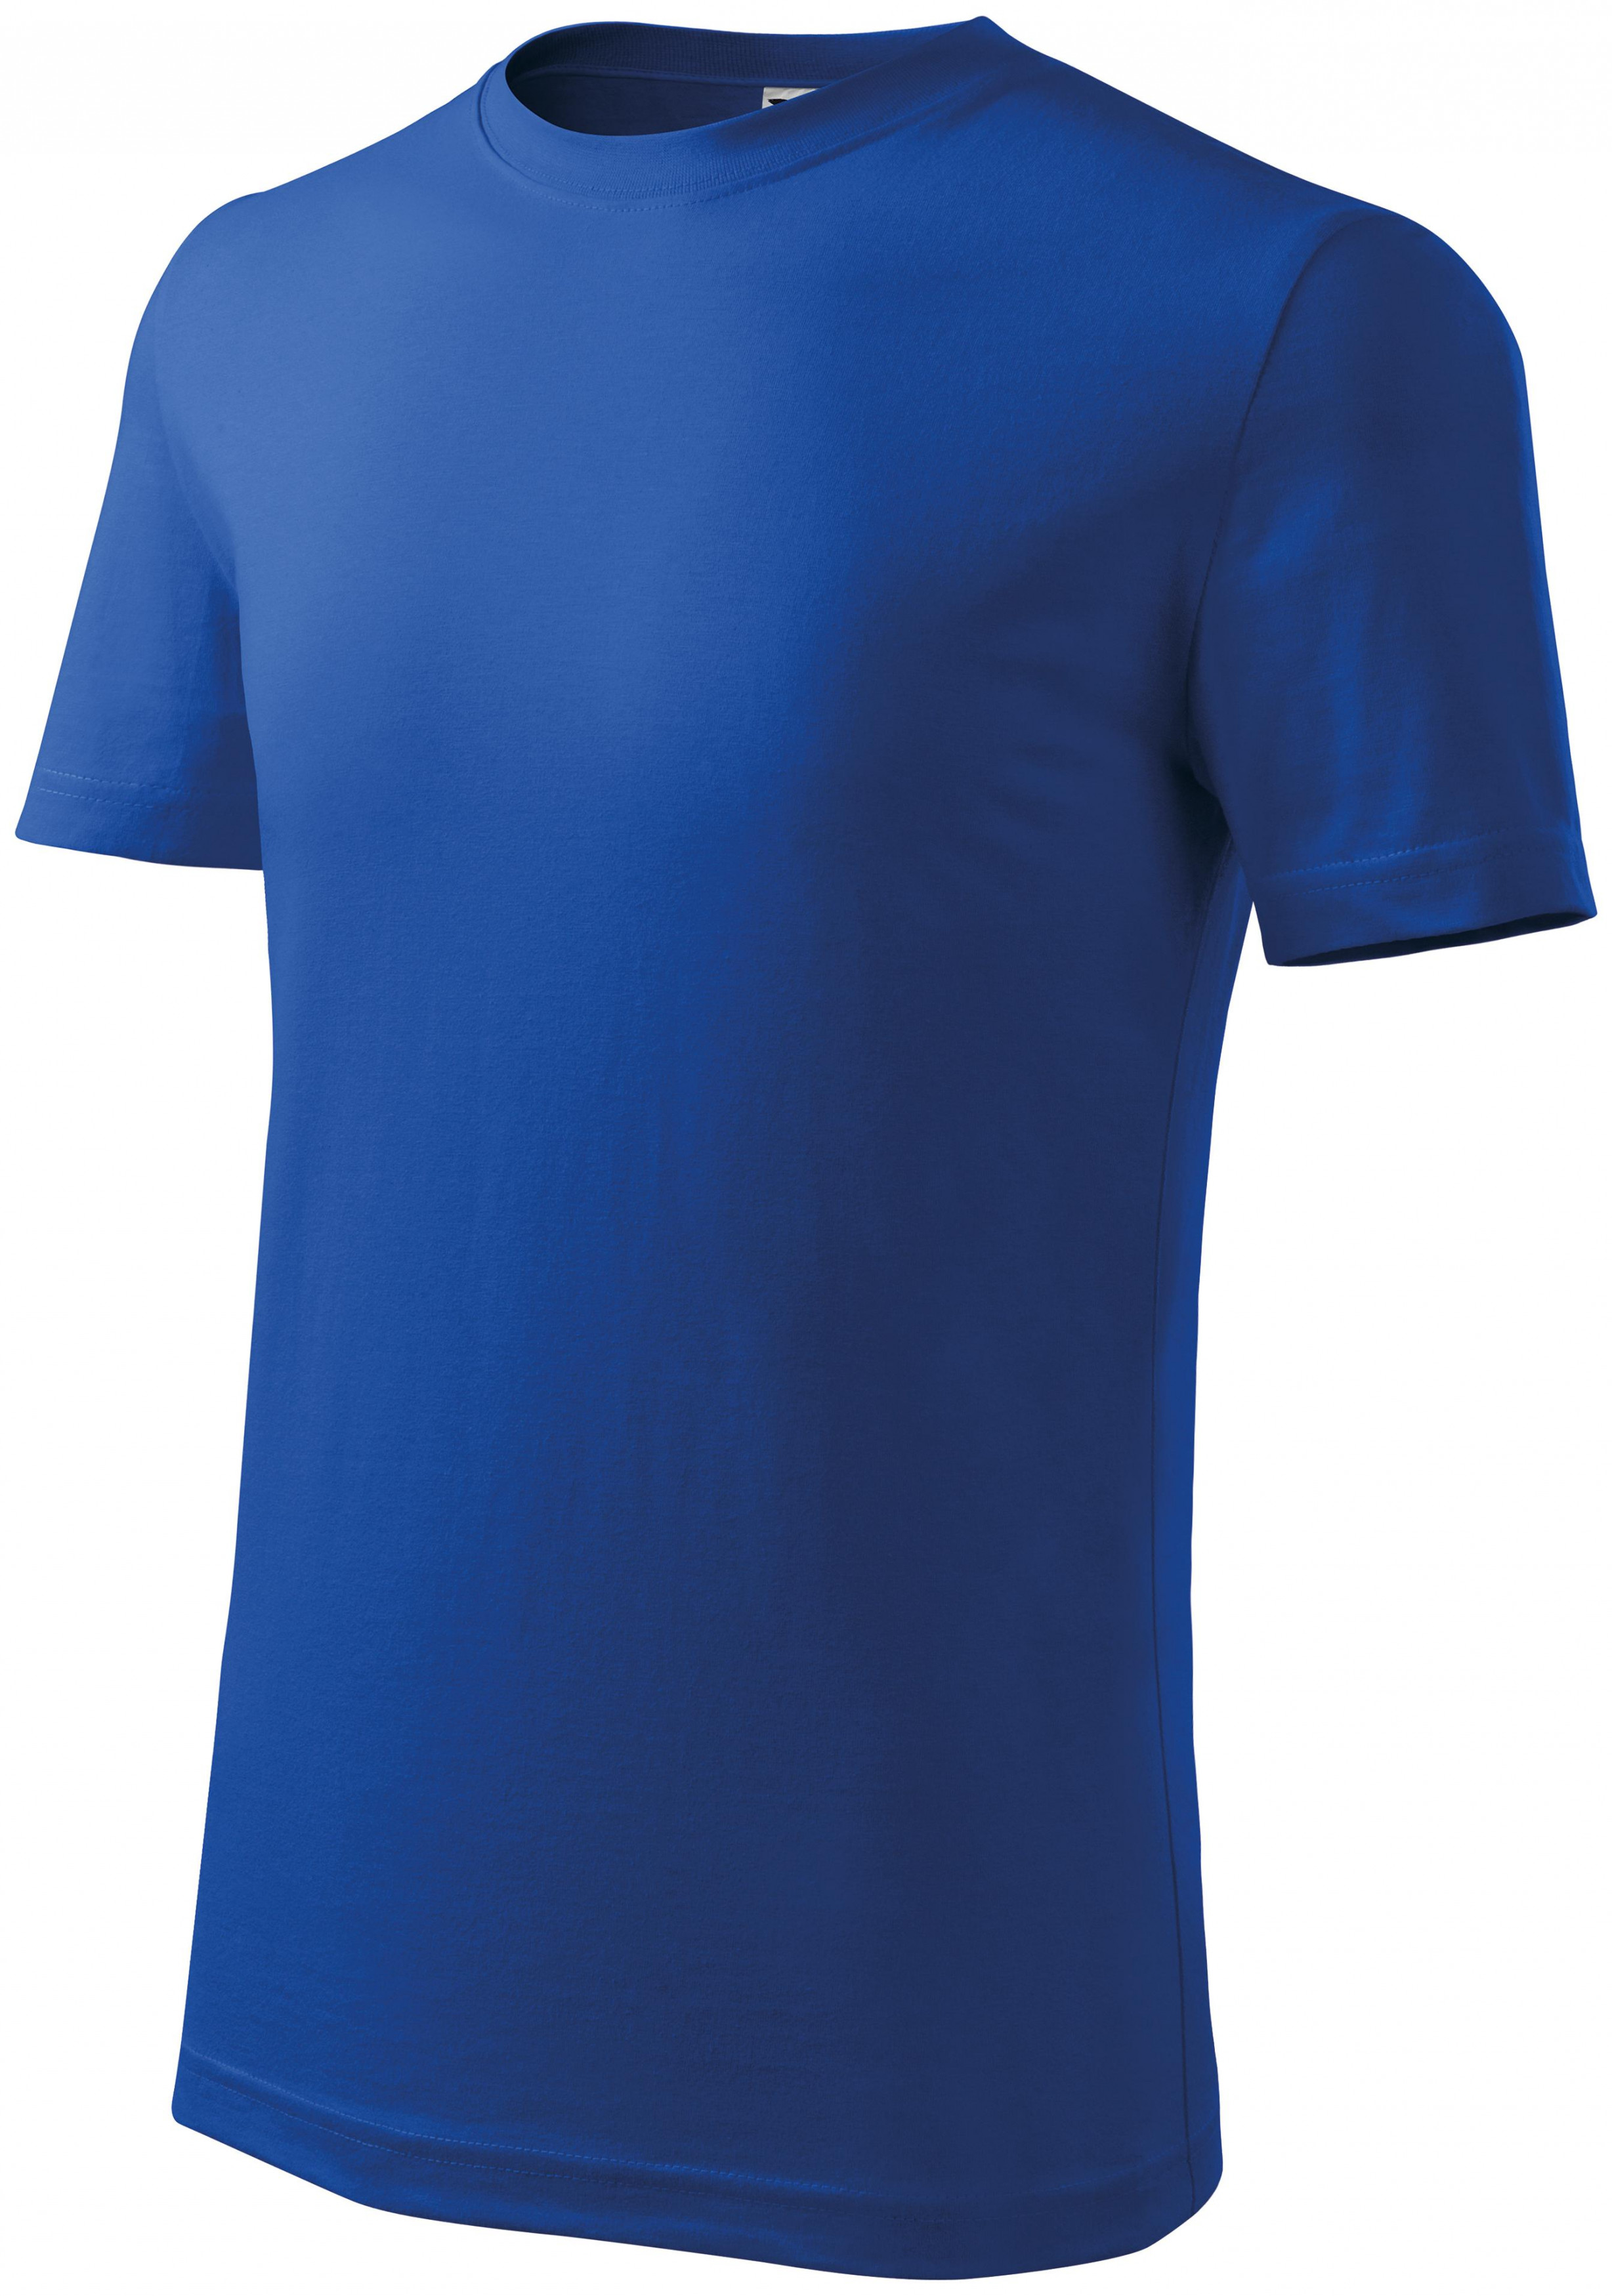 Detské tričko ľahšie, kráľovská modrá, 122cm / 6rokov